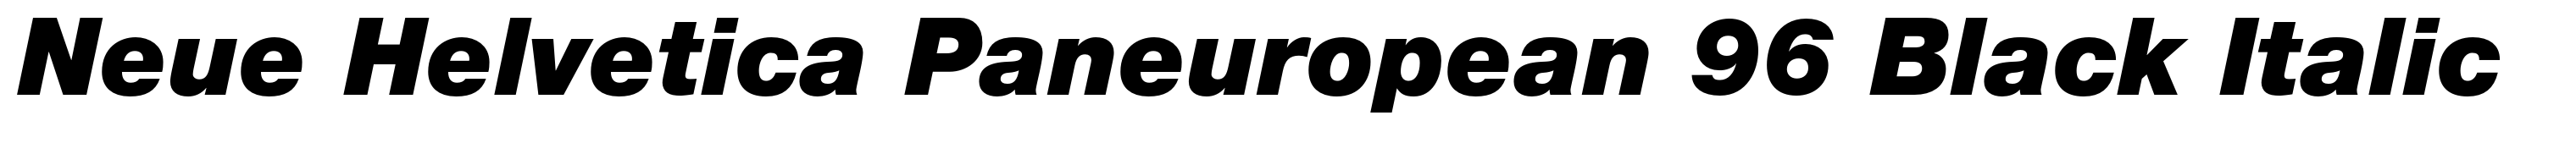 Neue Helvetica Paneuropean 96 Black Italic